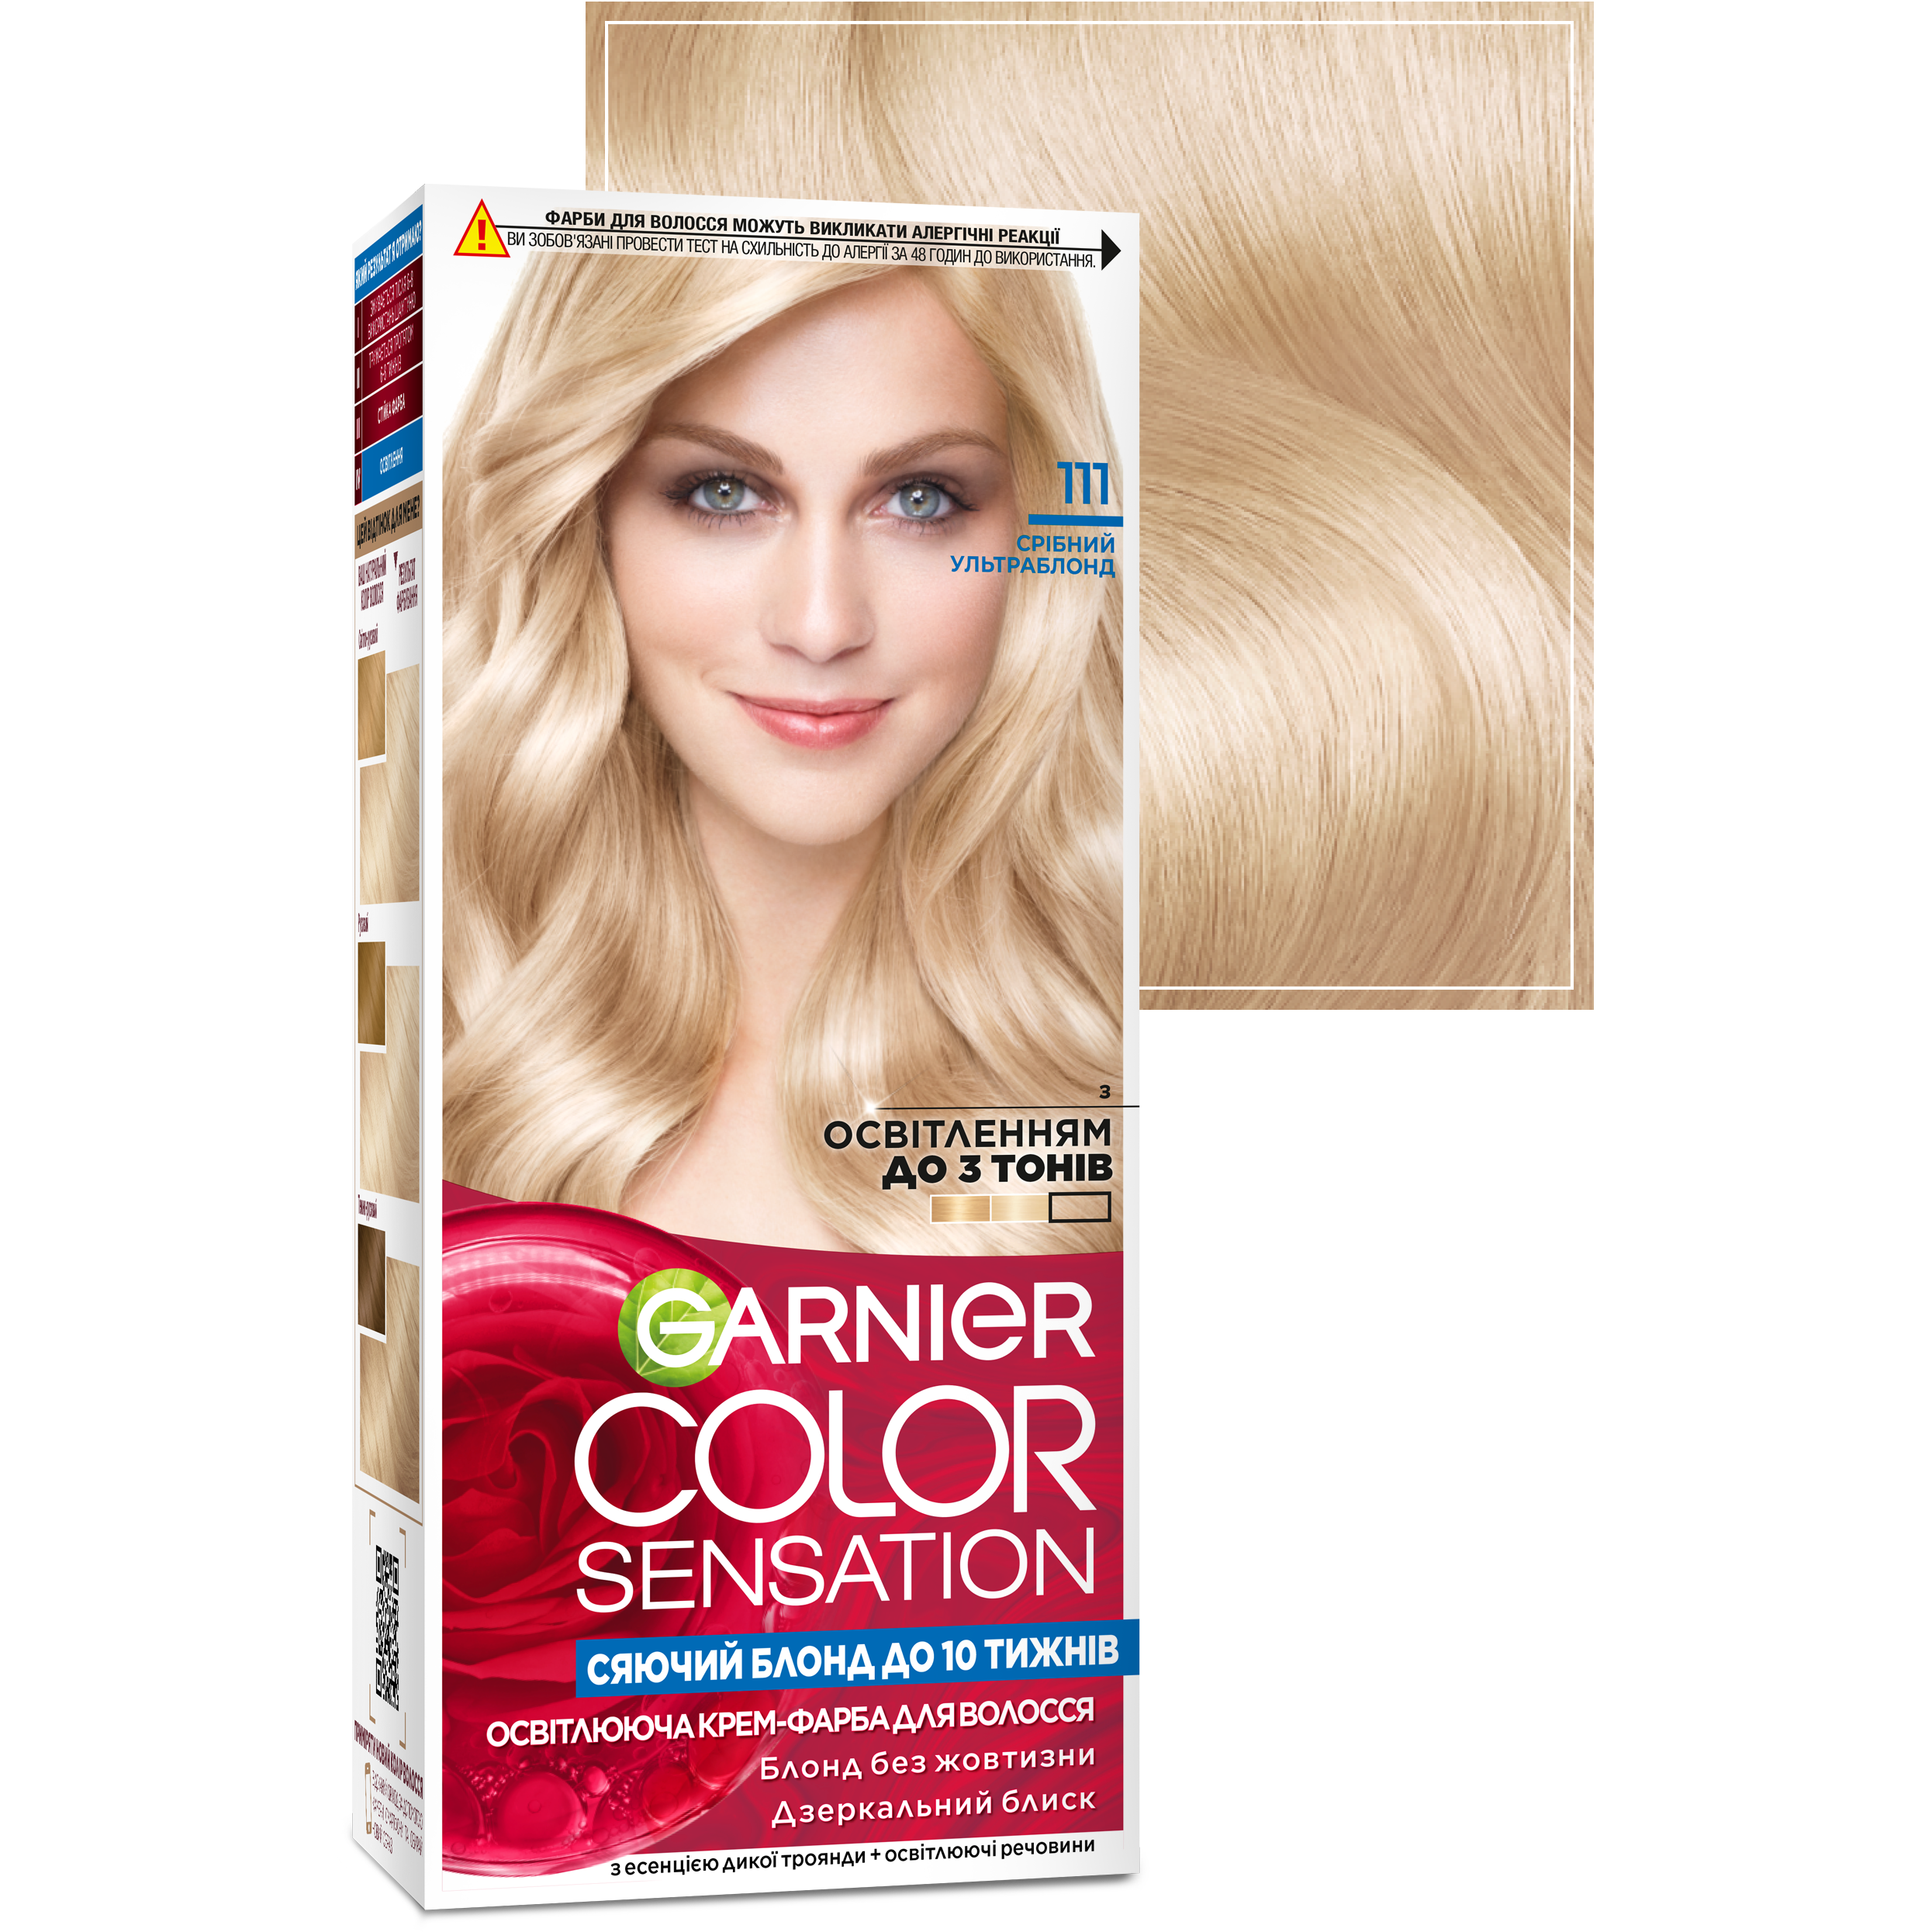 Краска для волос Garnier Color Sensation тон 111 (серебряный ультраблонд), 110 мл (C5651512) - фото 2